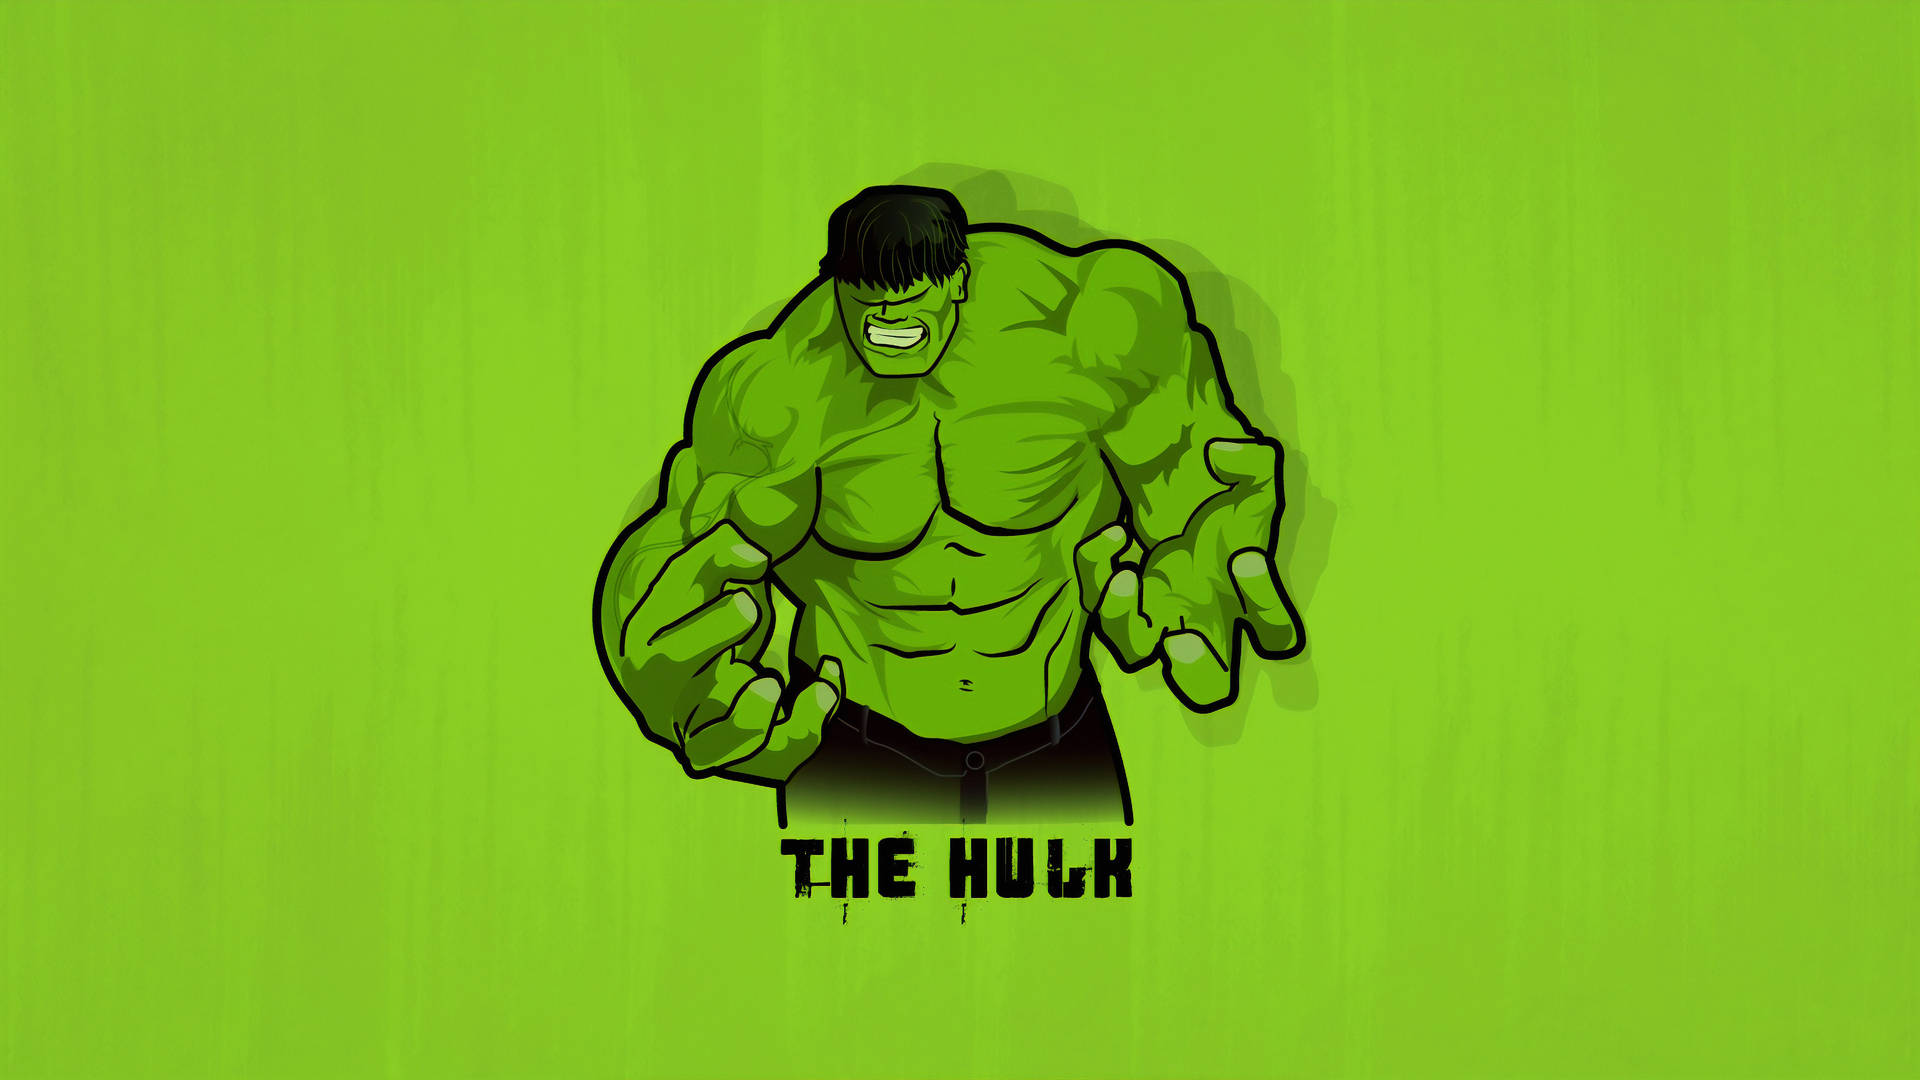 Free 4k Hulk Wallpaper Downloads, [100+] 4k Hulk Wallpapers for FREE |  